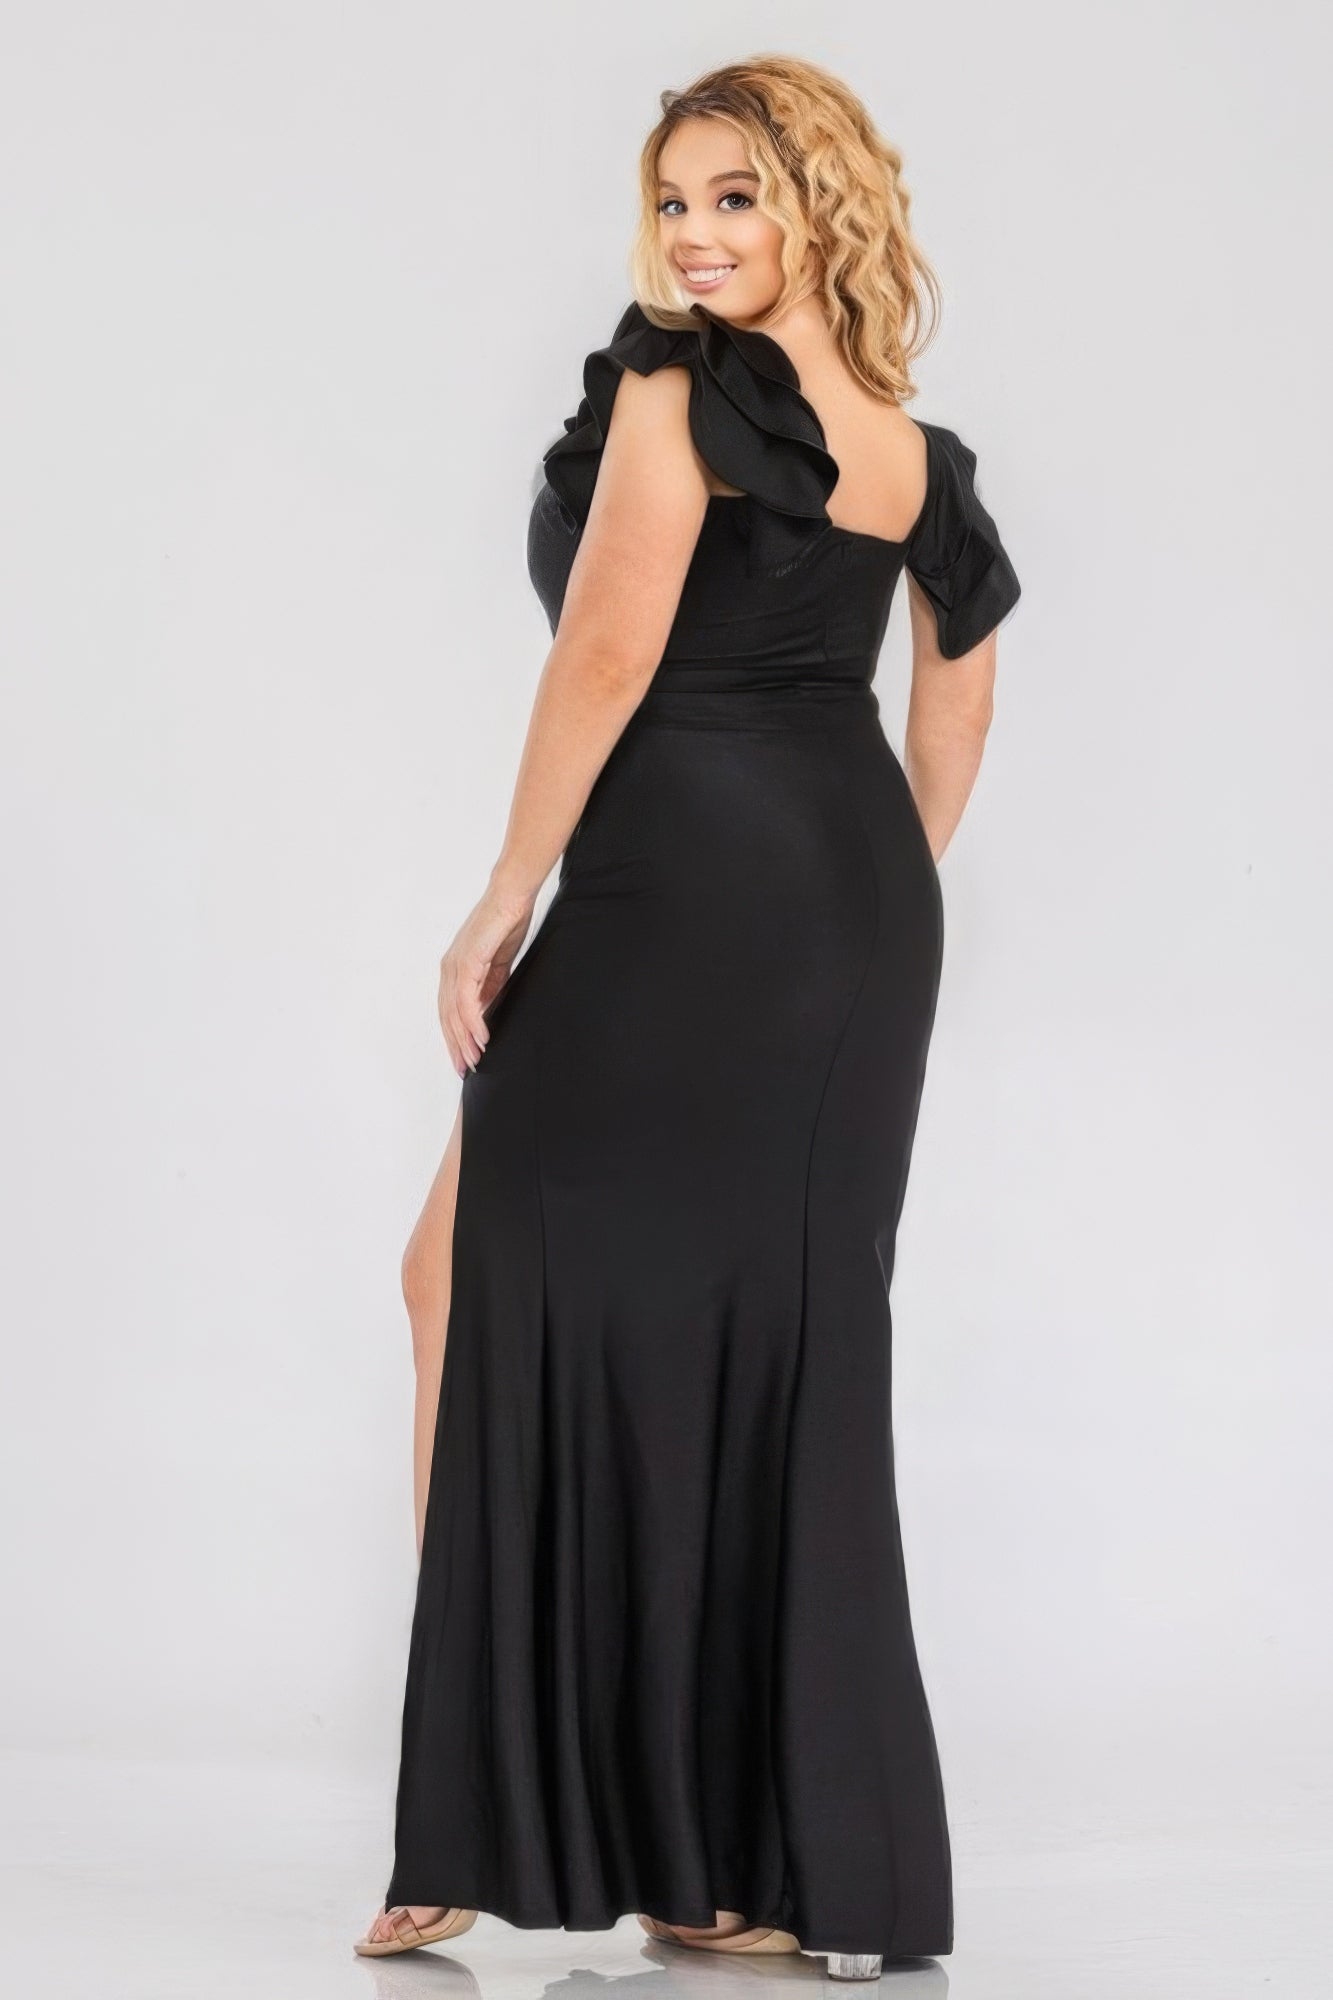 Luxury Satin Stretch Formal Dress (Fuchsia, Black or Royal)